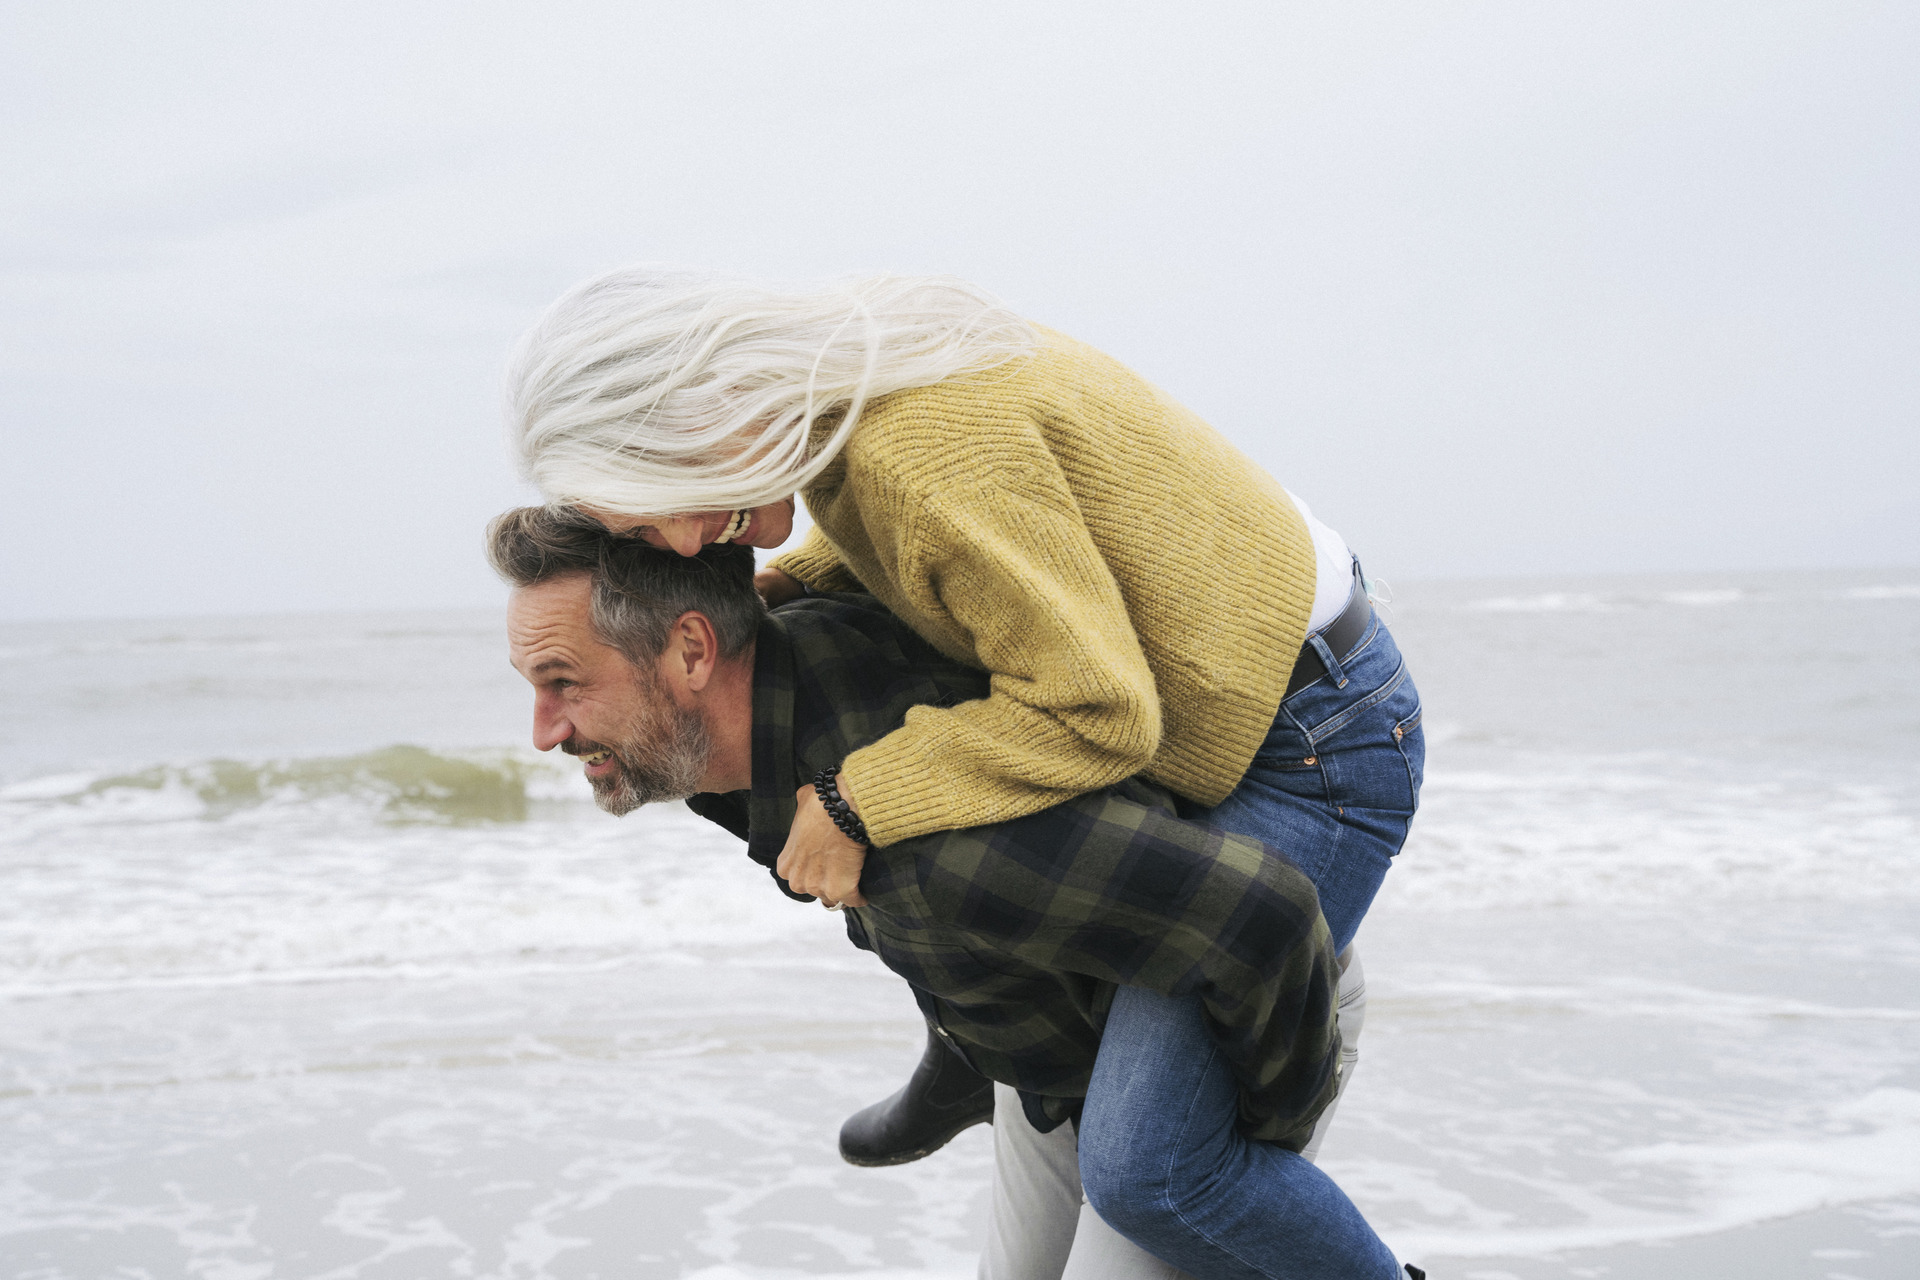 Mann på strand løper med en kvinne som han bærer på ryggen